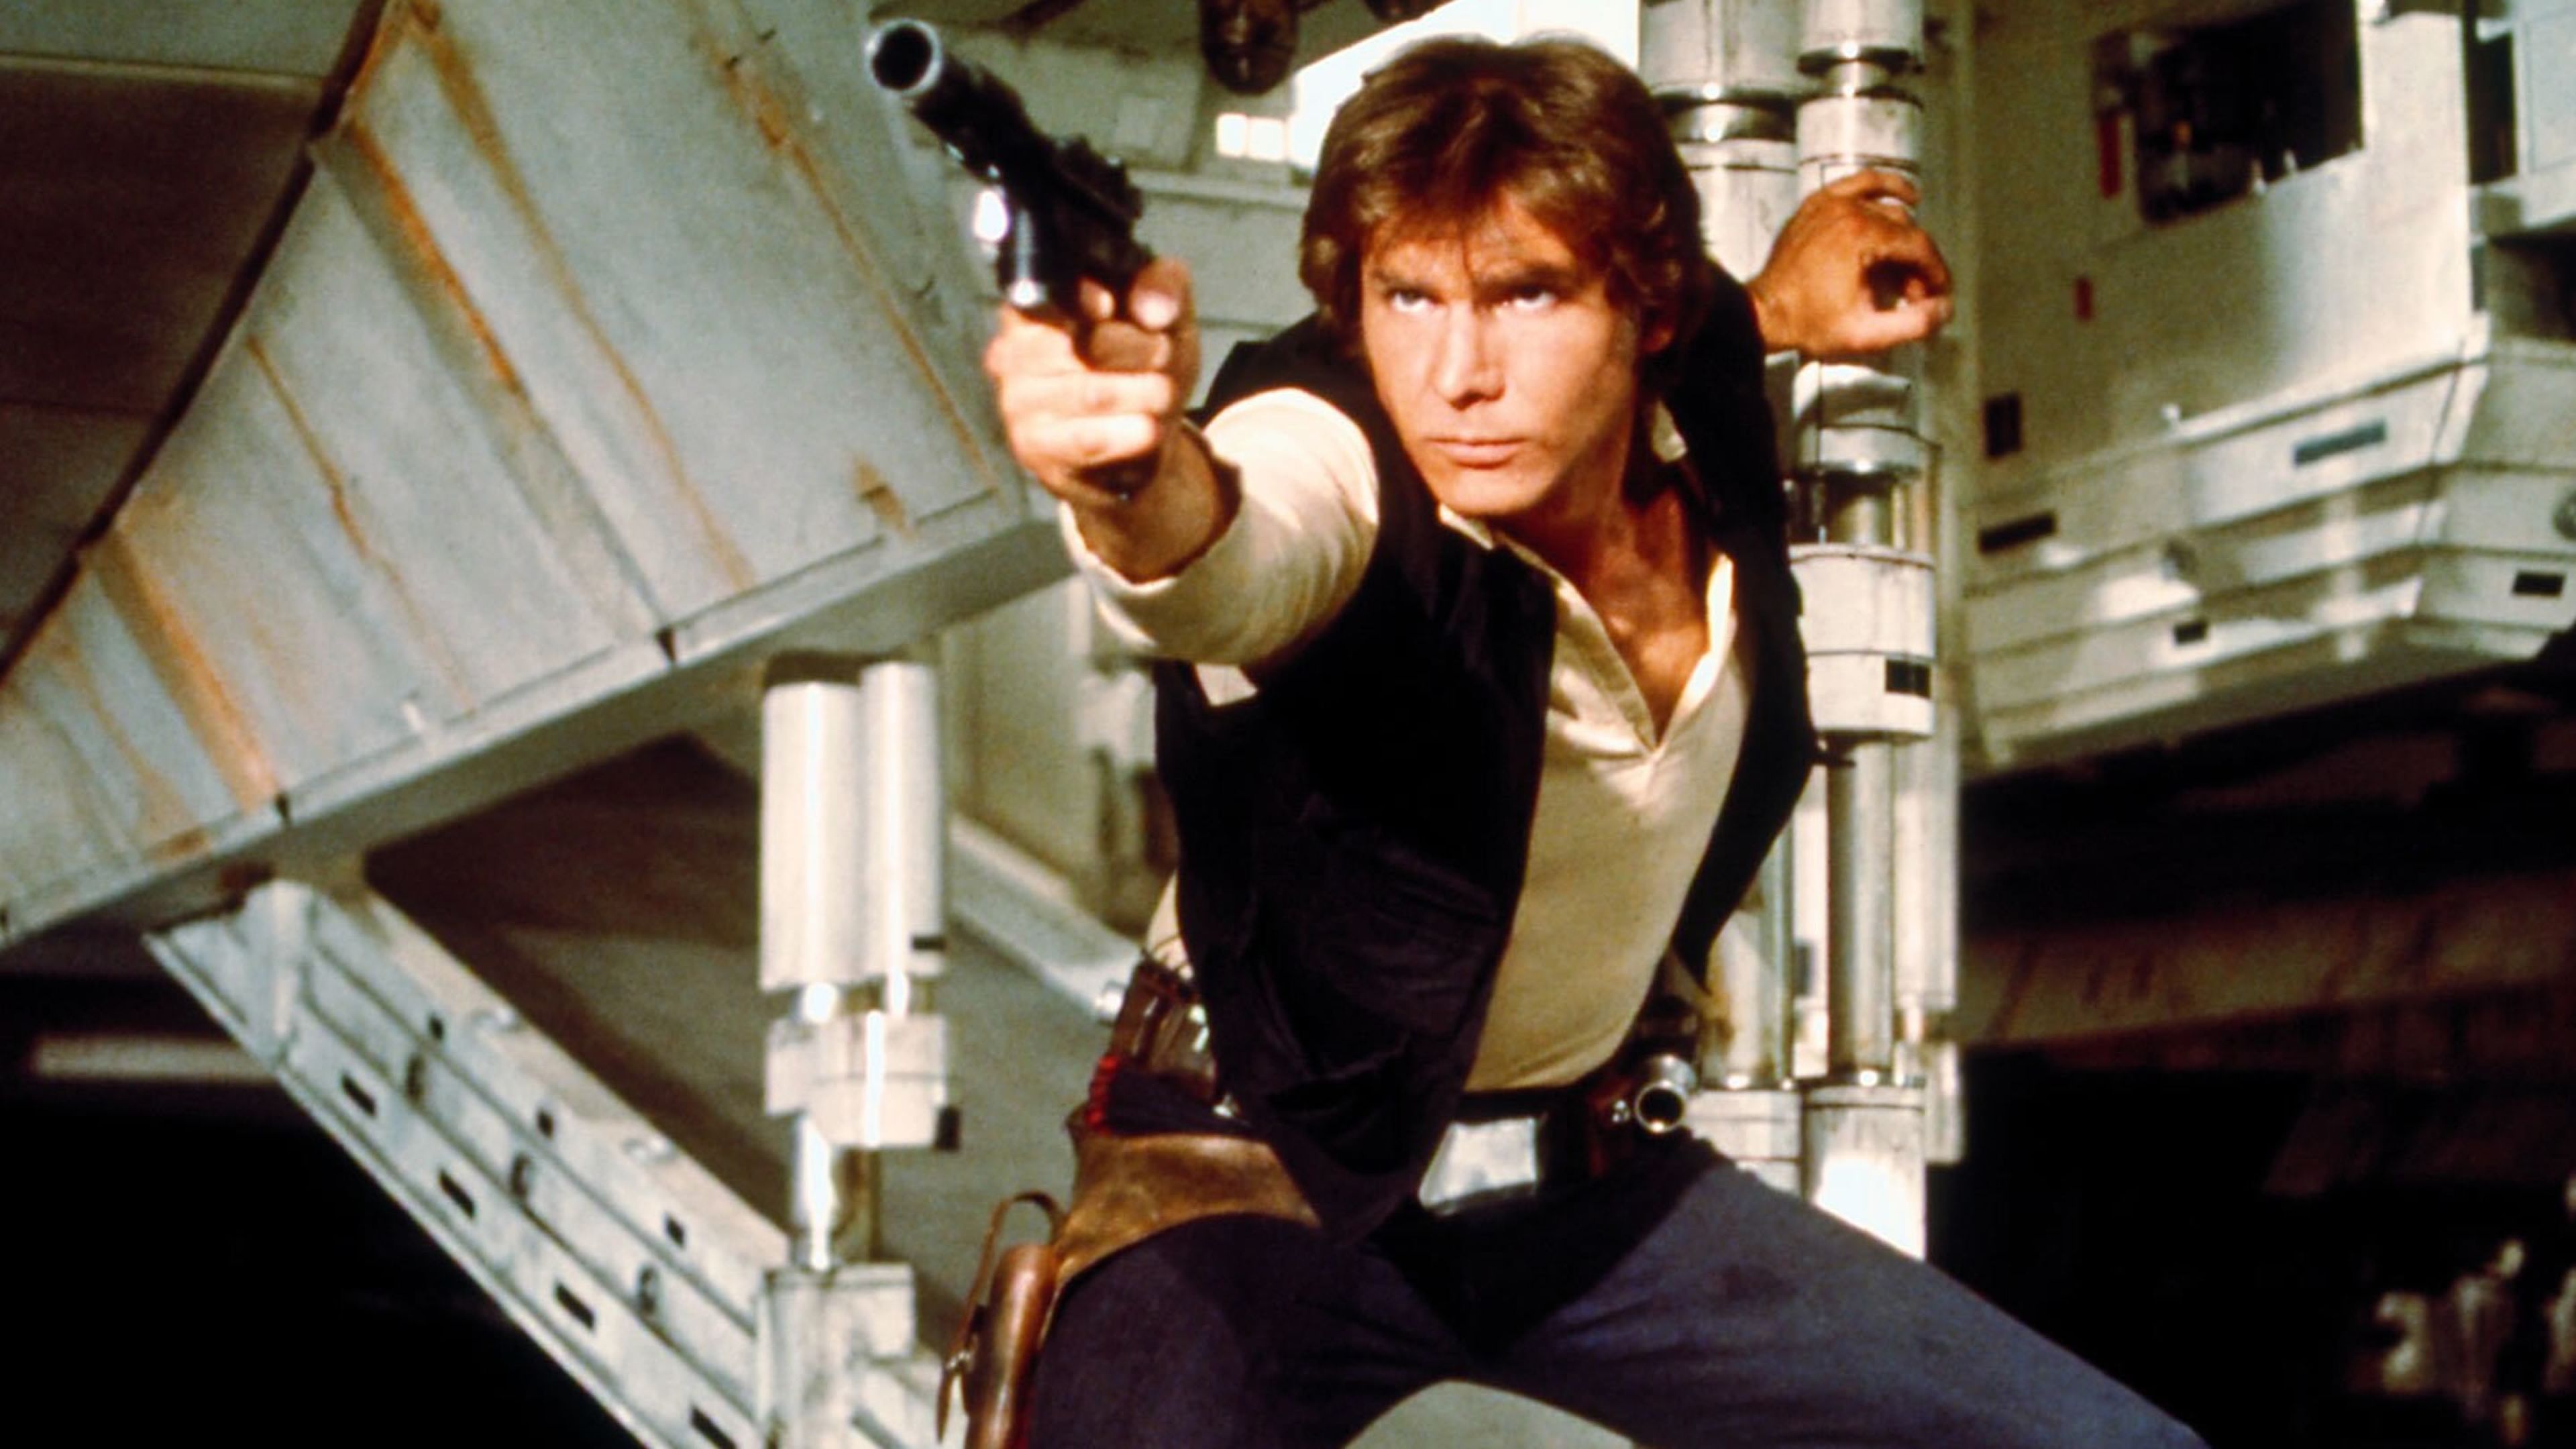 Star Wars: Episodio IV - Una nueva esperanza (1977) - Han Solo (Harrison Ford)